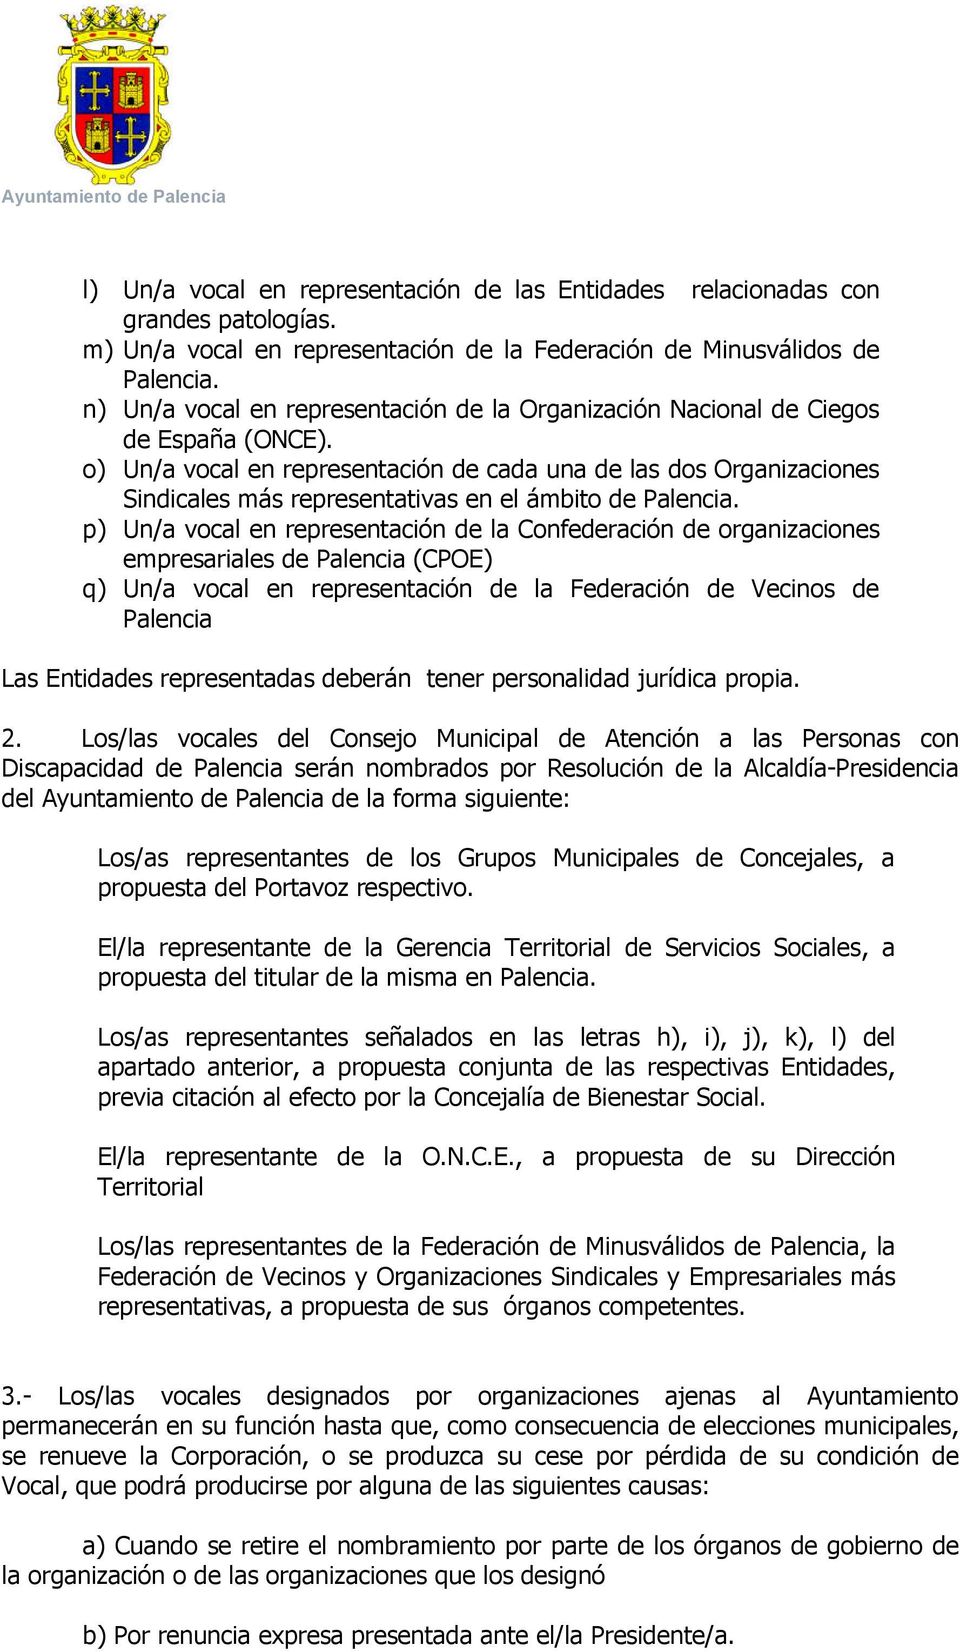 o) Un/a vocal en representación de cada una de las dos Organizaciones Sindicales más representativas en el ámbito de Palencia.